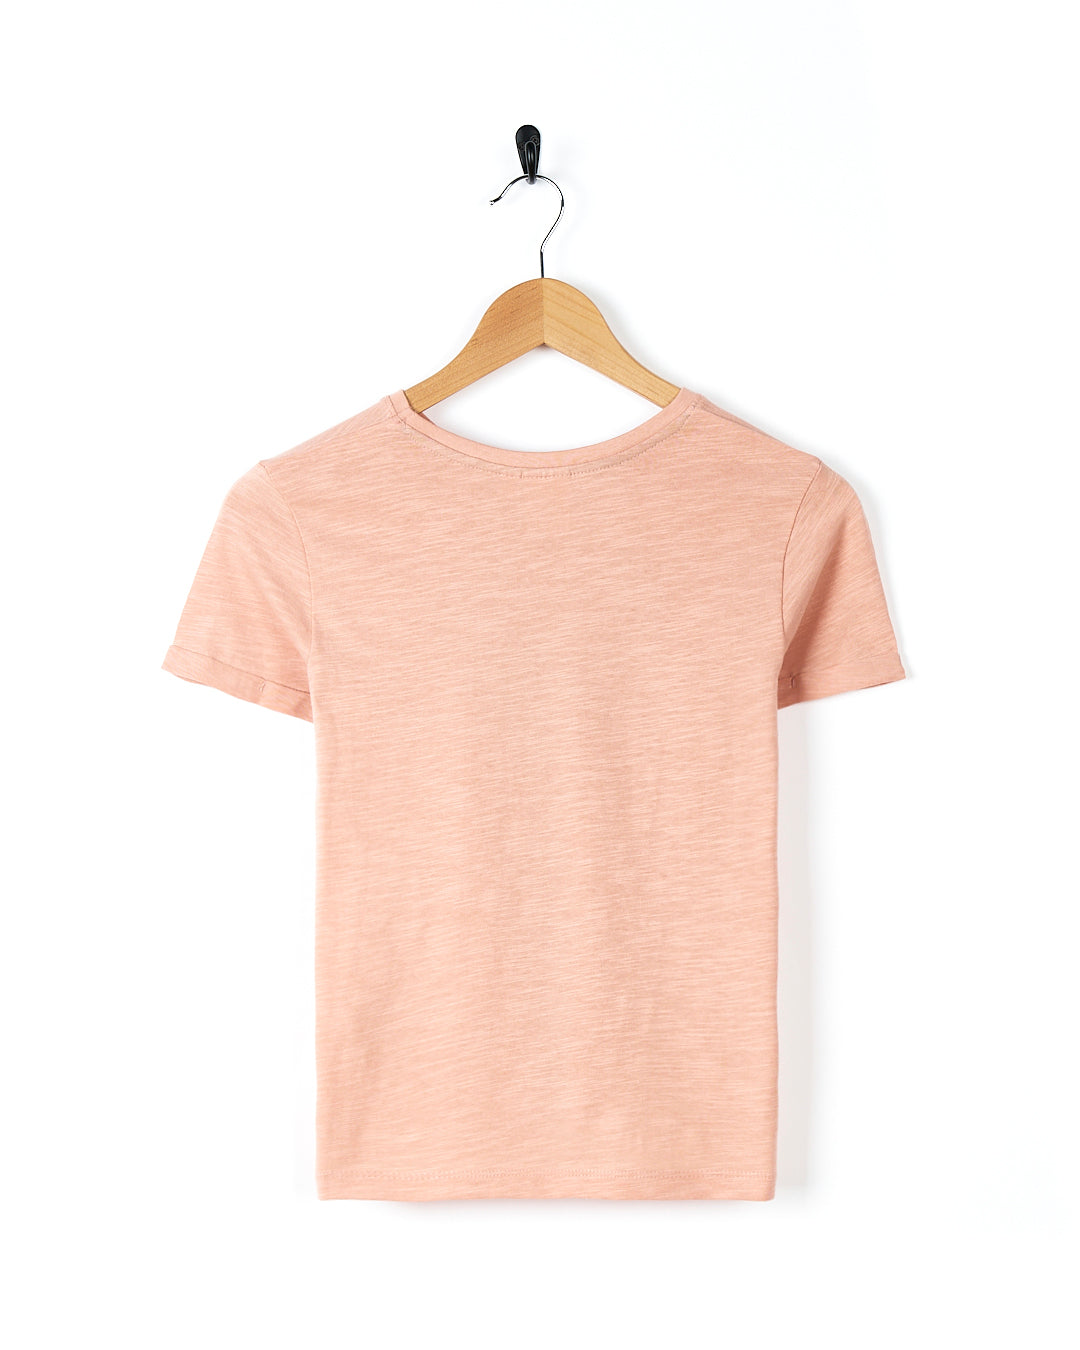 Magic Moth - Kids Short Sleeve T-Shirt - Light Pink